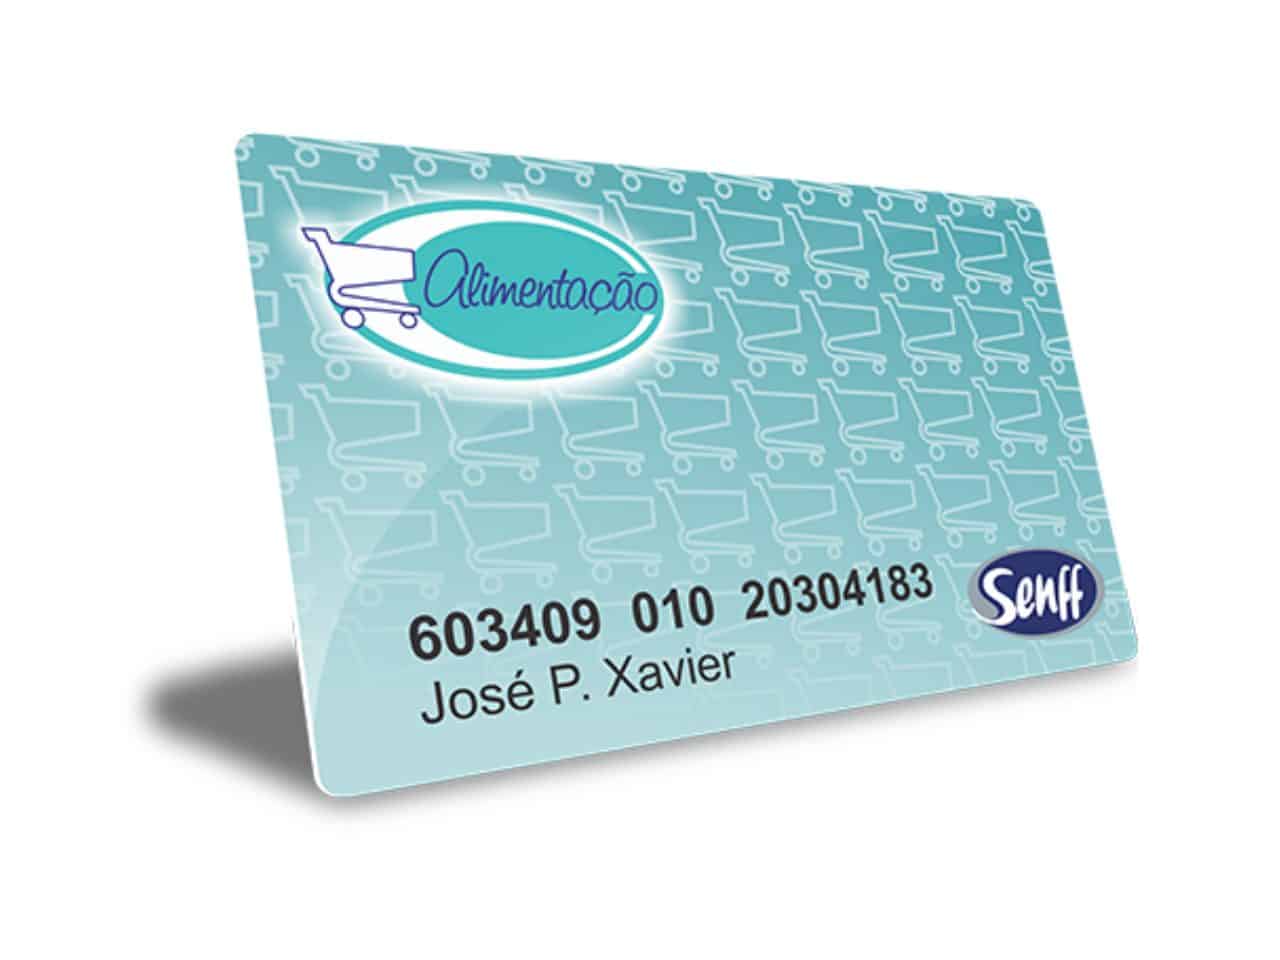 imagem do cartão alimentação senff para ilustrar o texto sobre onde aceita o cartão senff